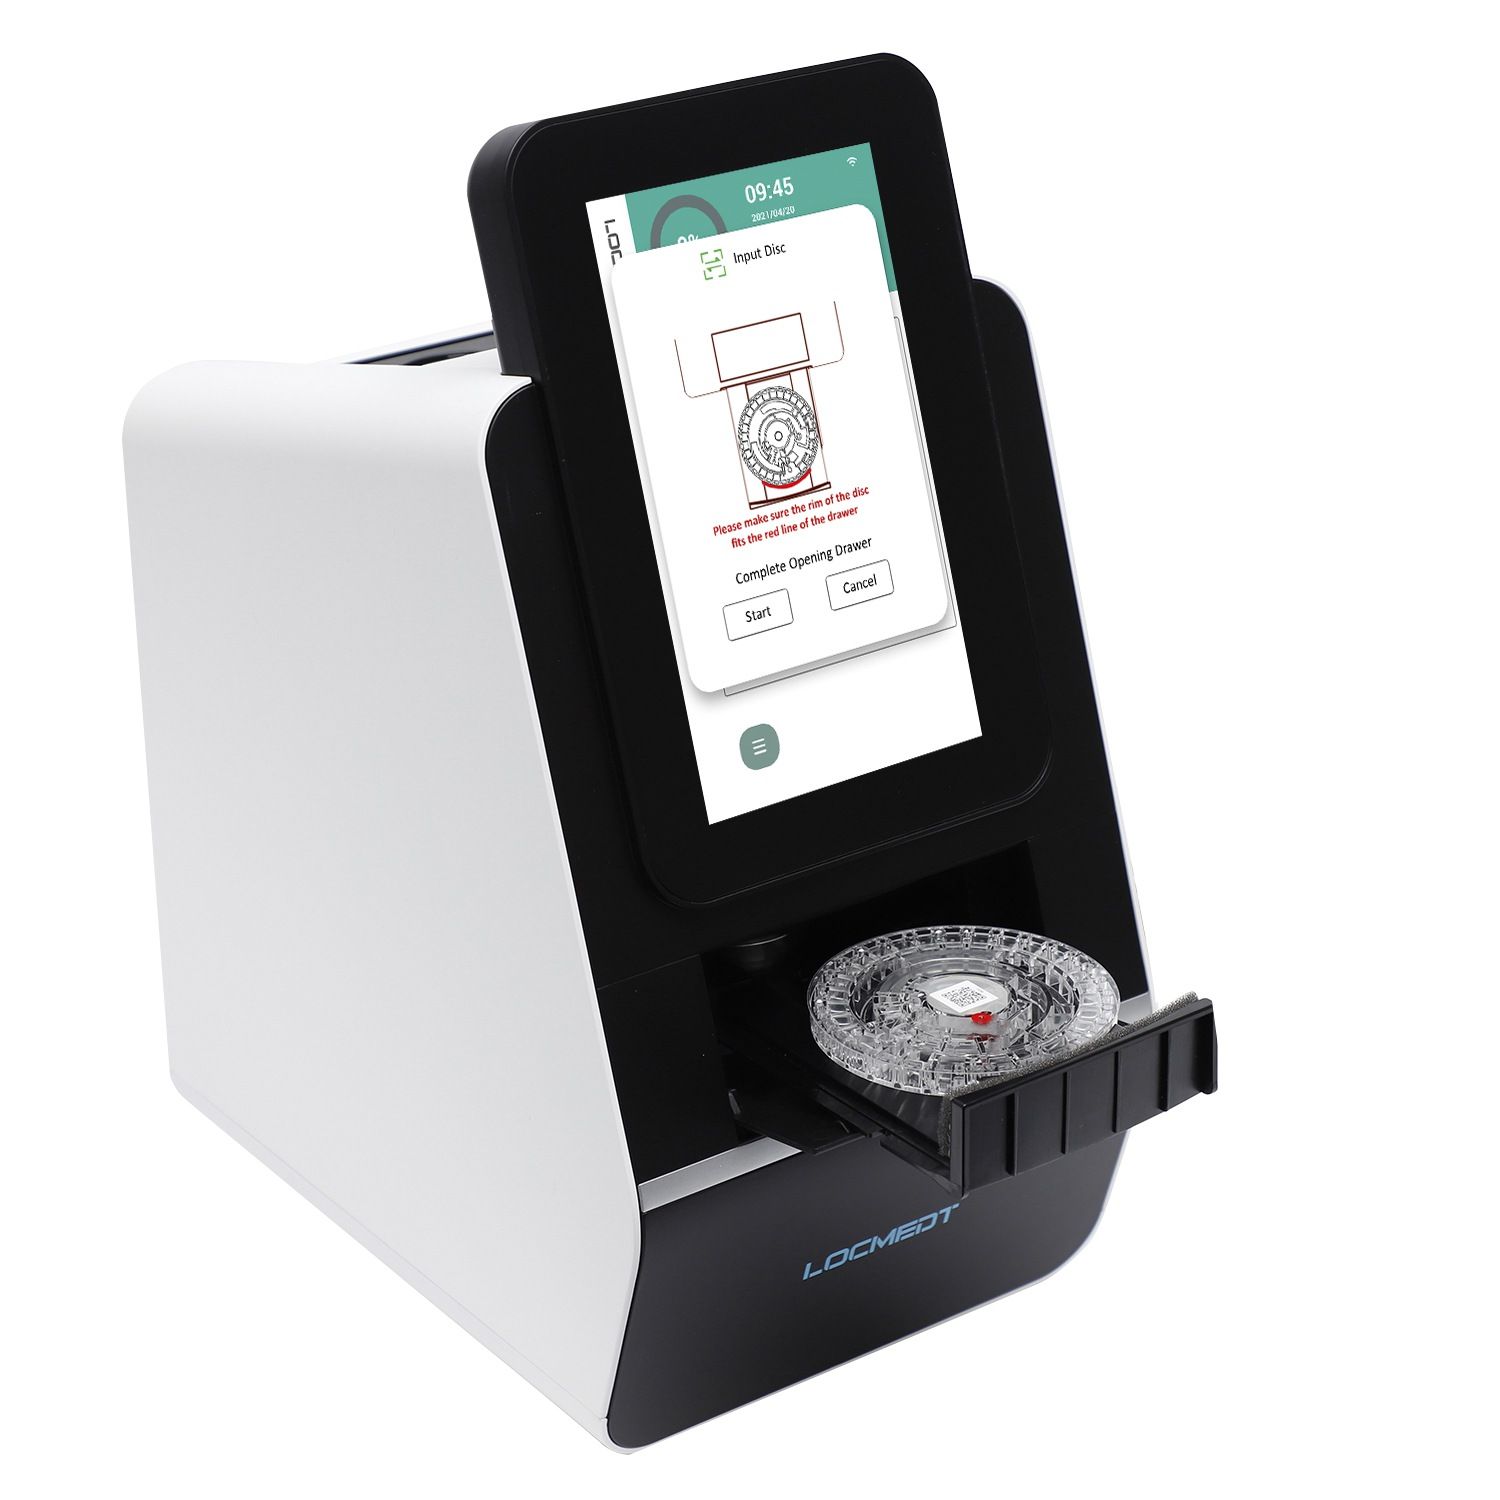 Analyseur de test sanguin automatique pour animaux de compagnie Noahcali-100